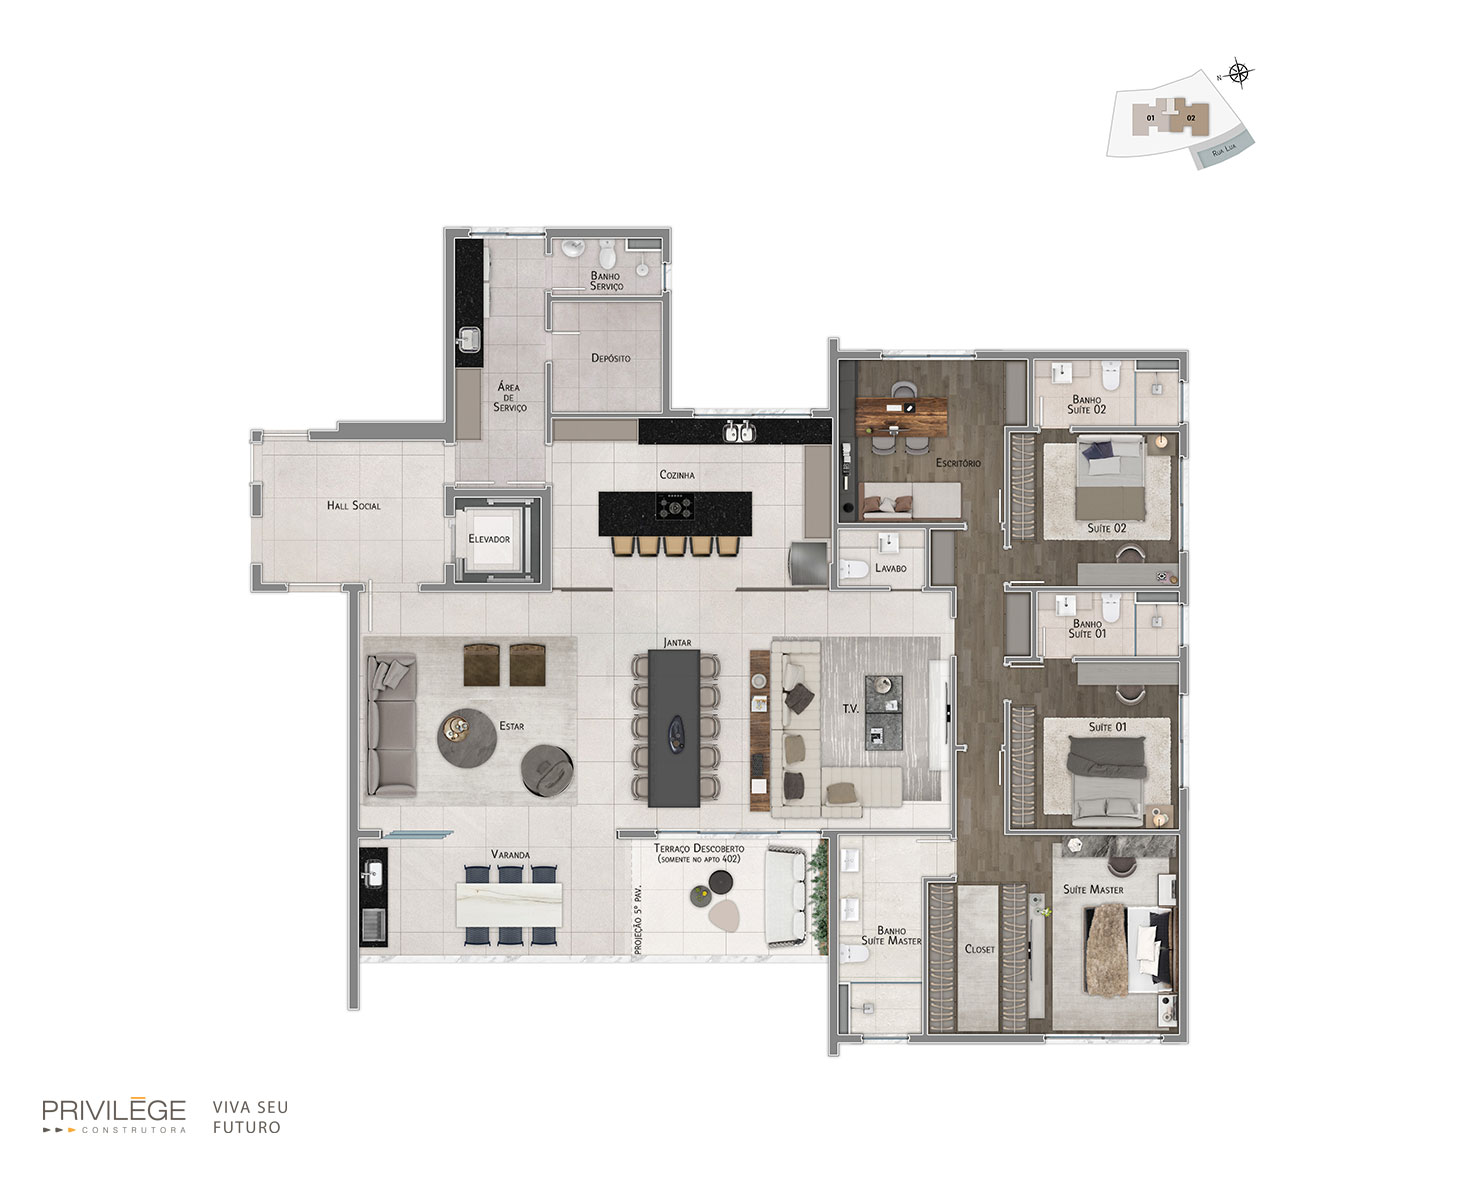 Apartamento 4 quartos com opção de escritório – final 01